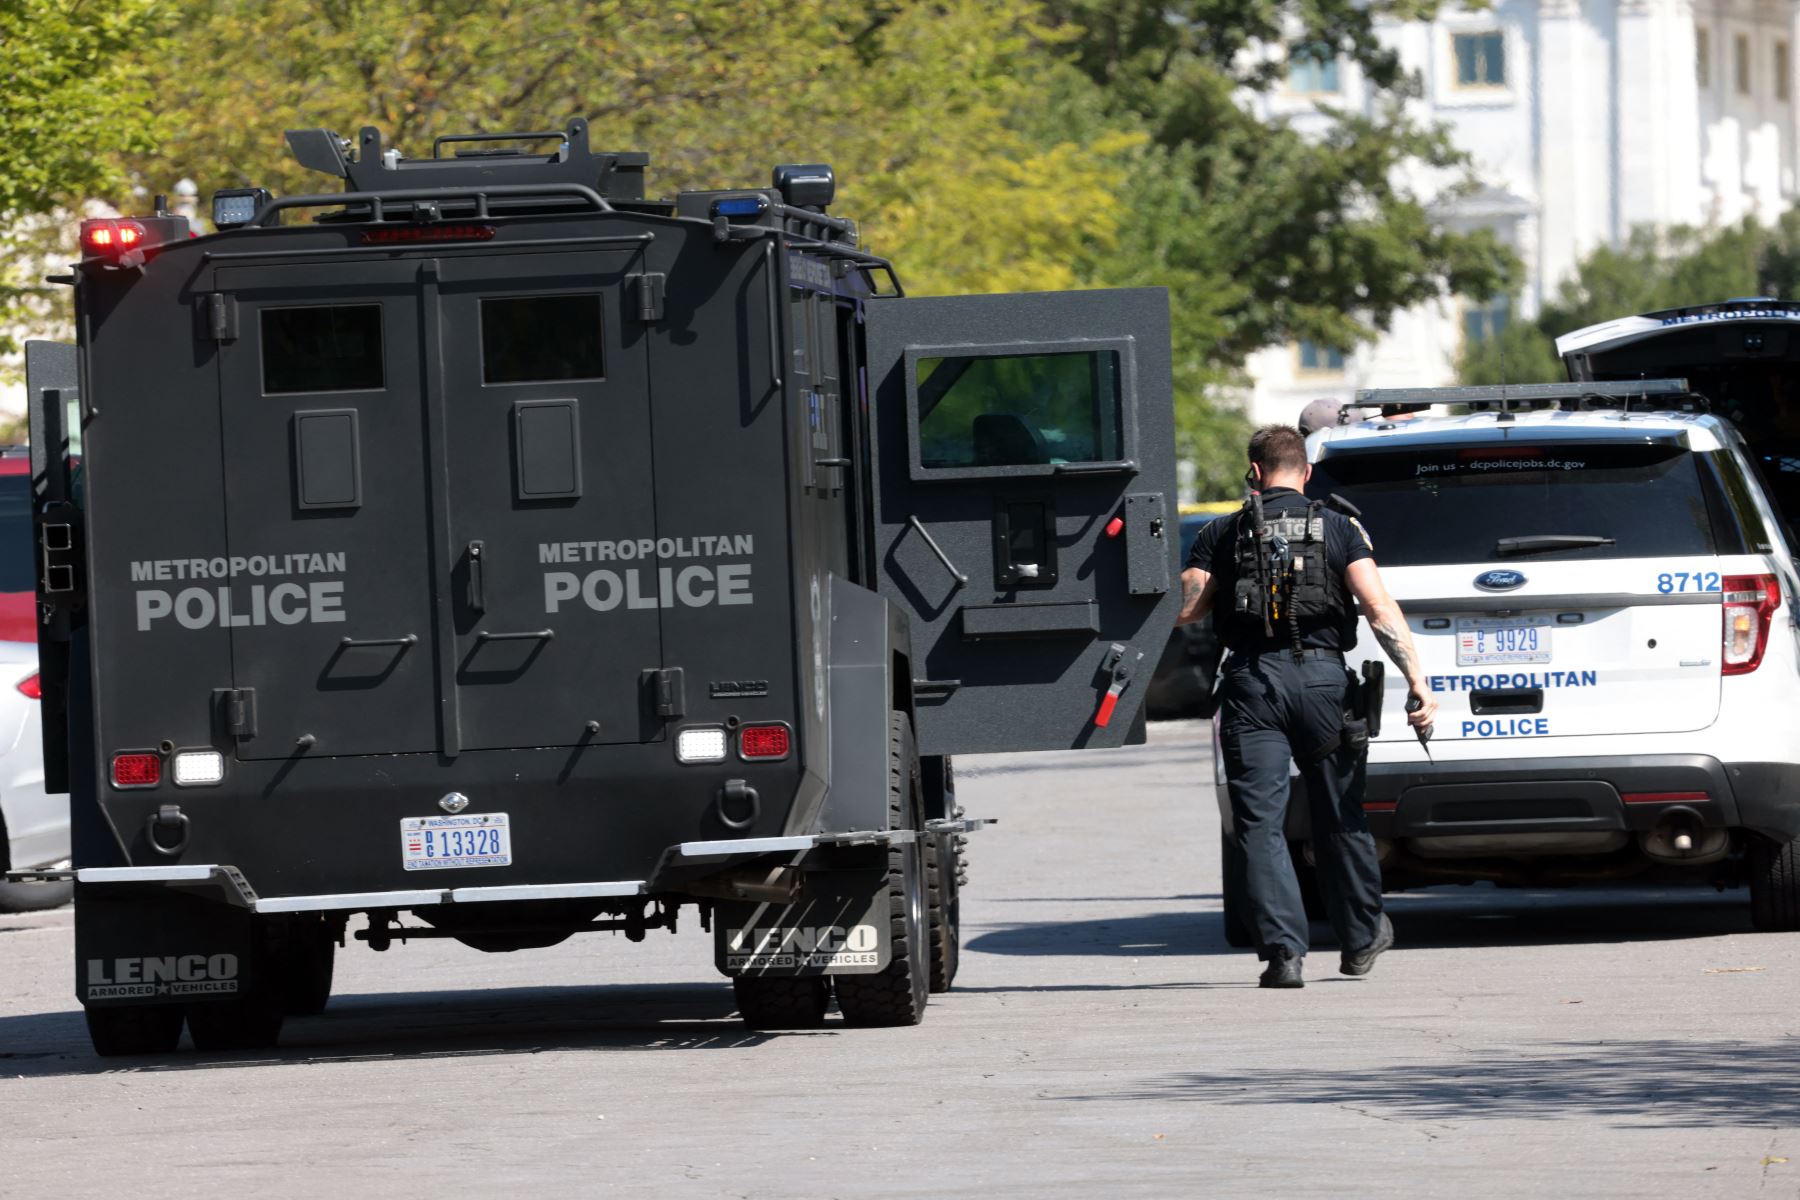 Los socorristas llegan al lugar para investigar un informe de un artefacto explosivo en una camioneta cerca de la Biblioteca del Congreso en Capitol Hill, en Washington, DC.
Foto: AFP